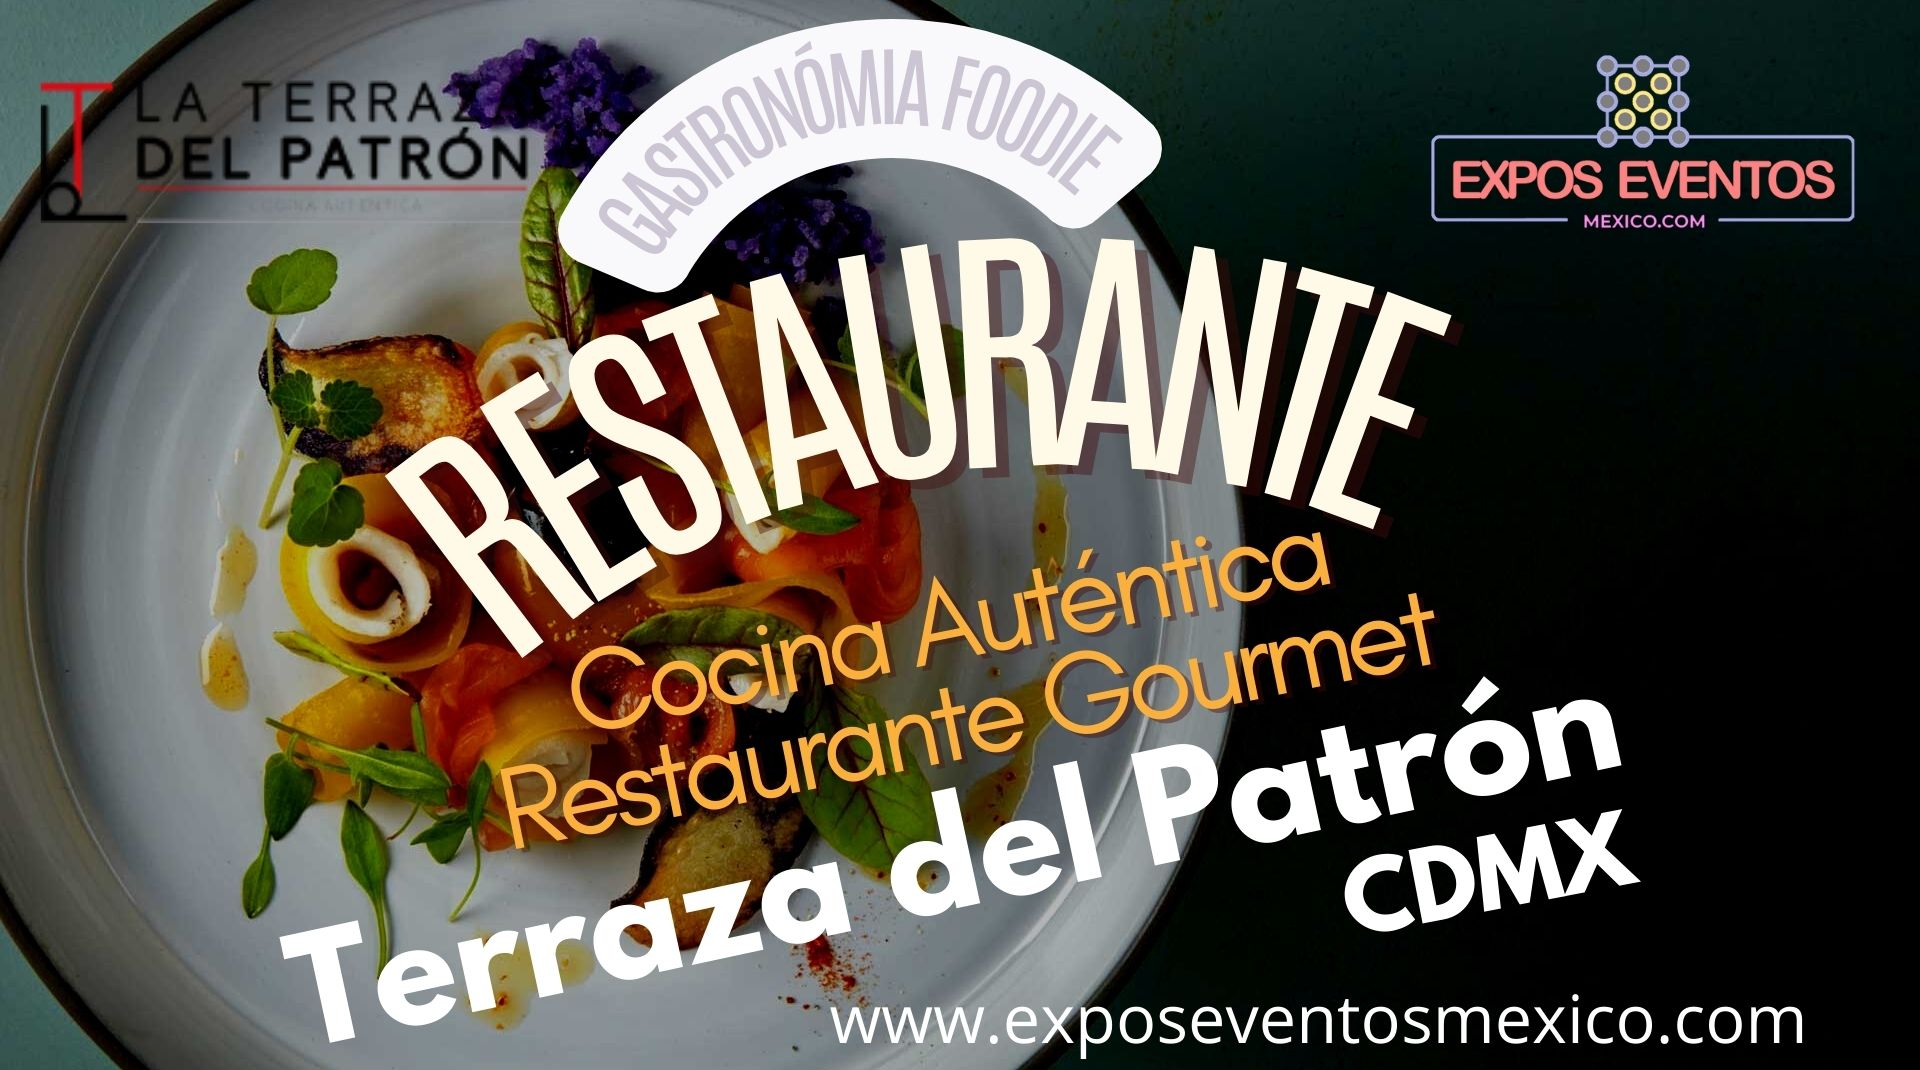 Restaurante La Terraza del Patrón Cocina Auténtica Restaurante Gourmet CDMX